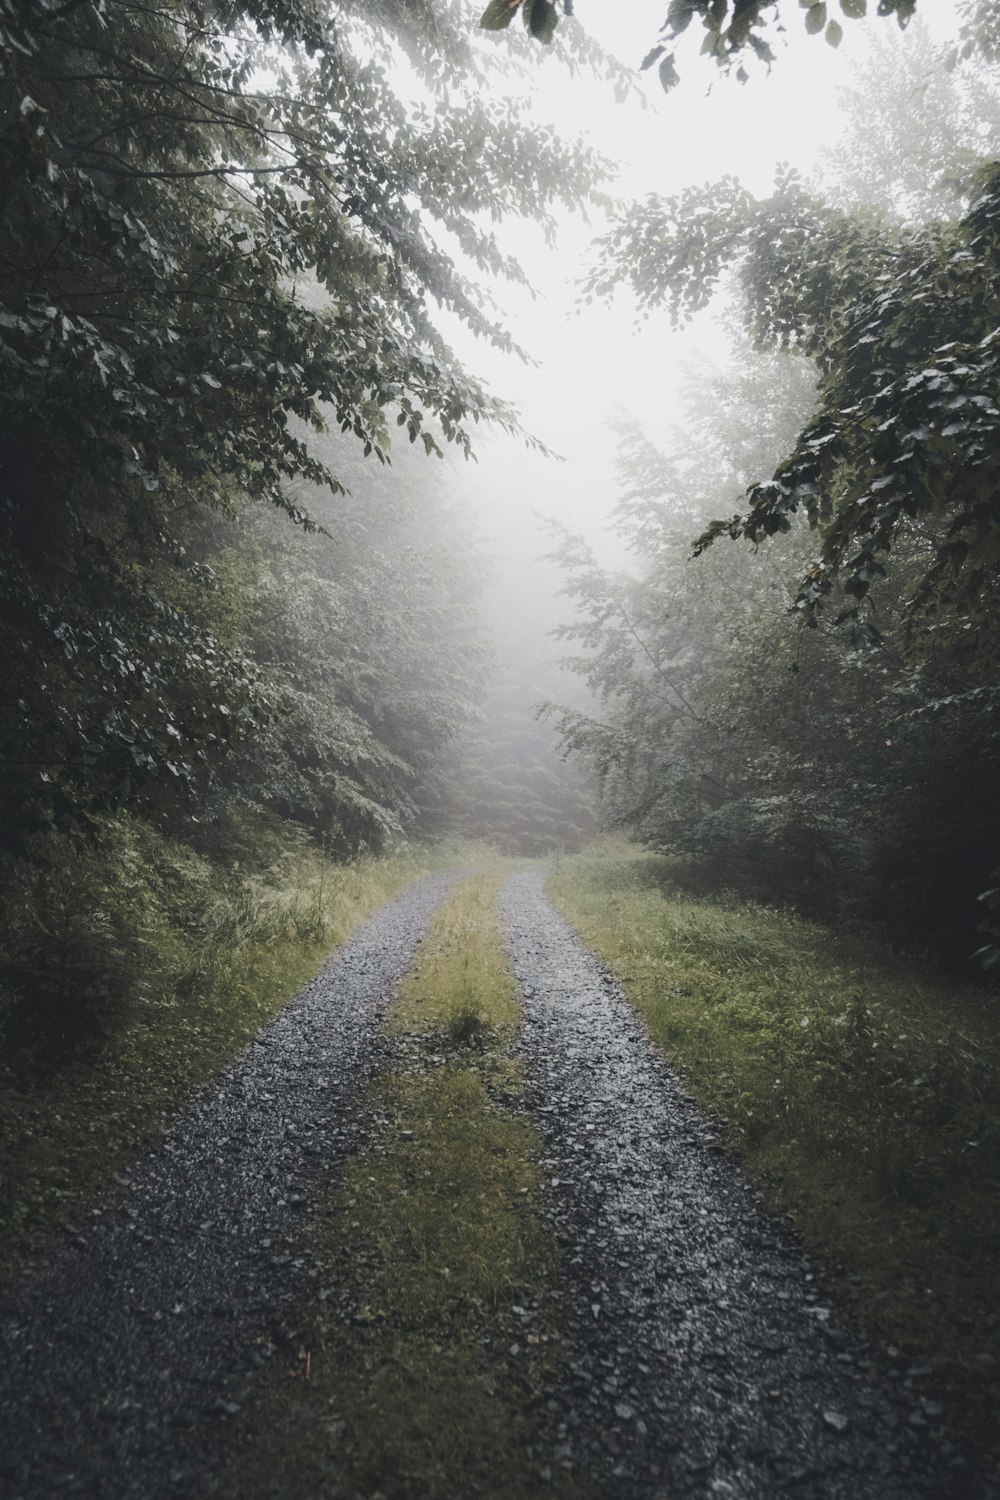 strada sterrata tra la foresta durante la giornata nebbiosa